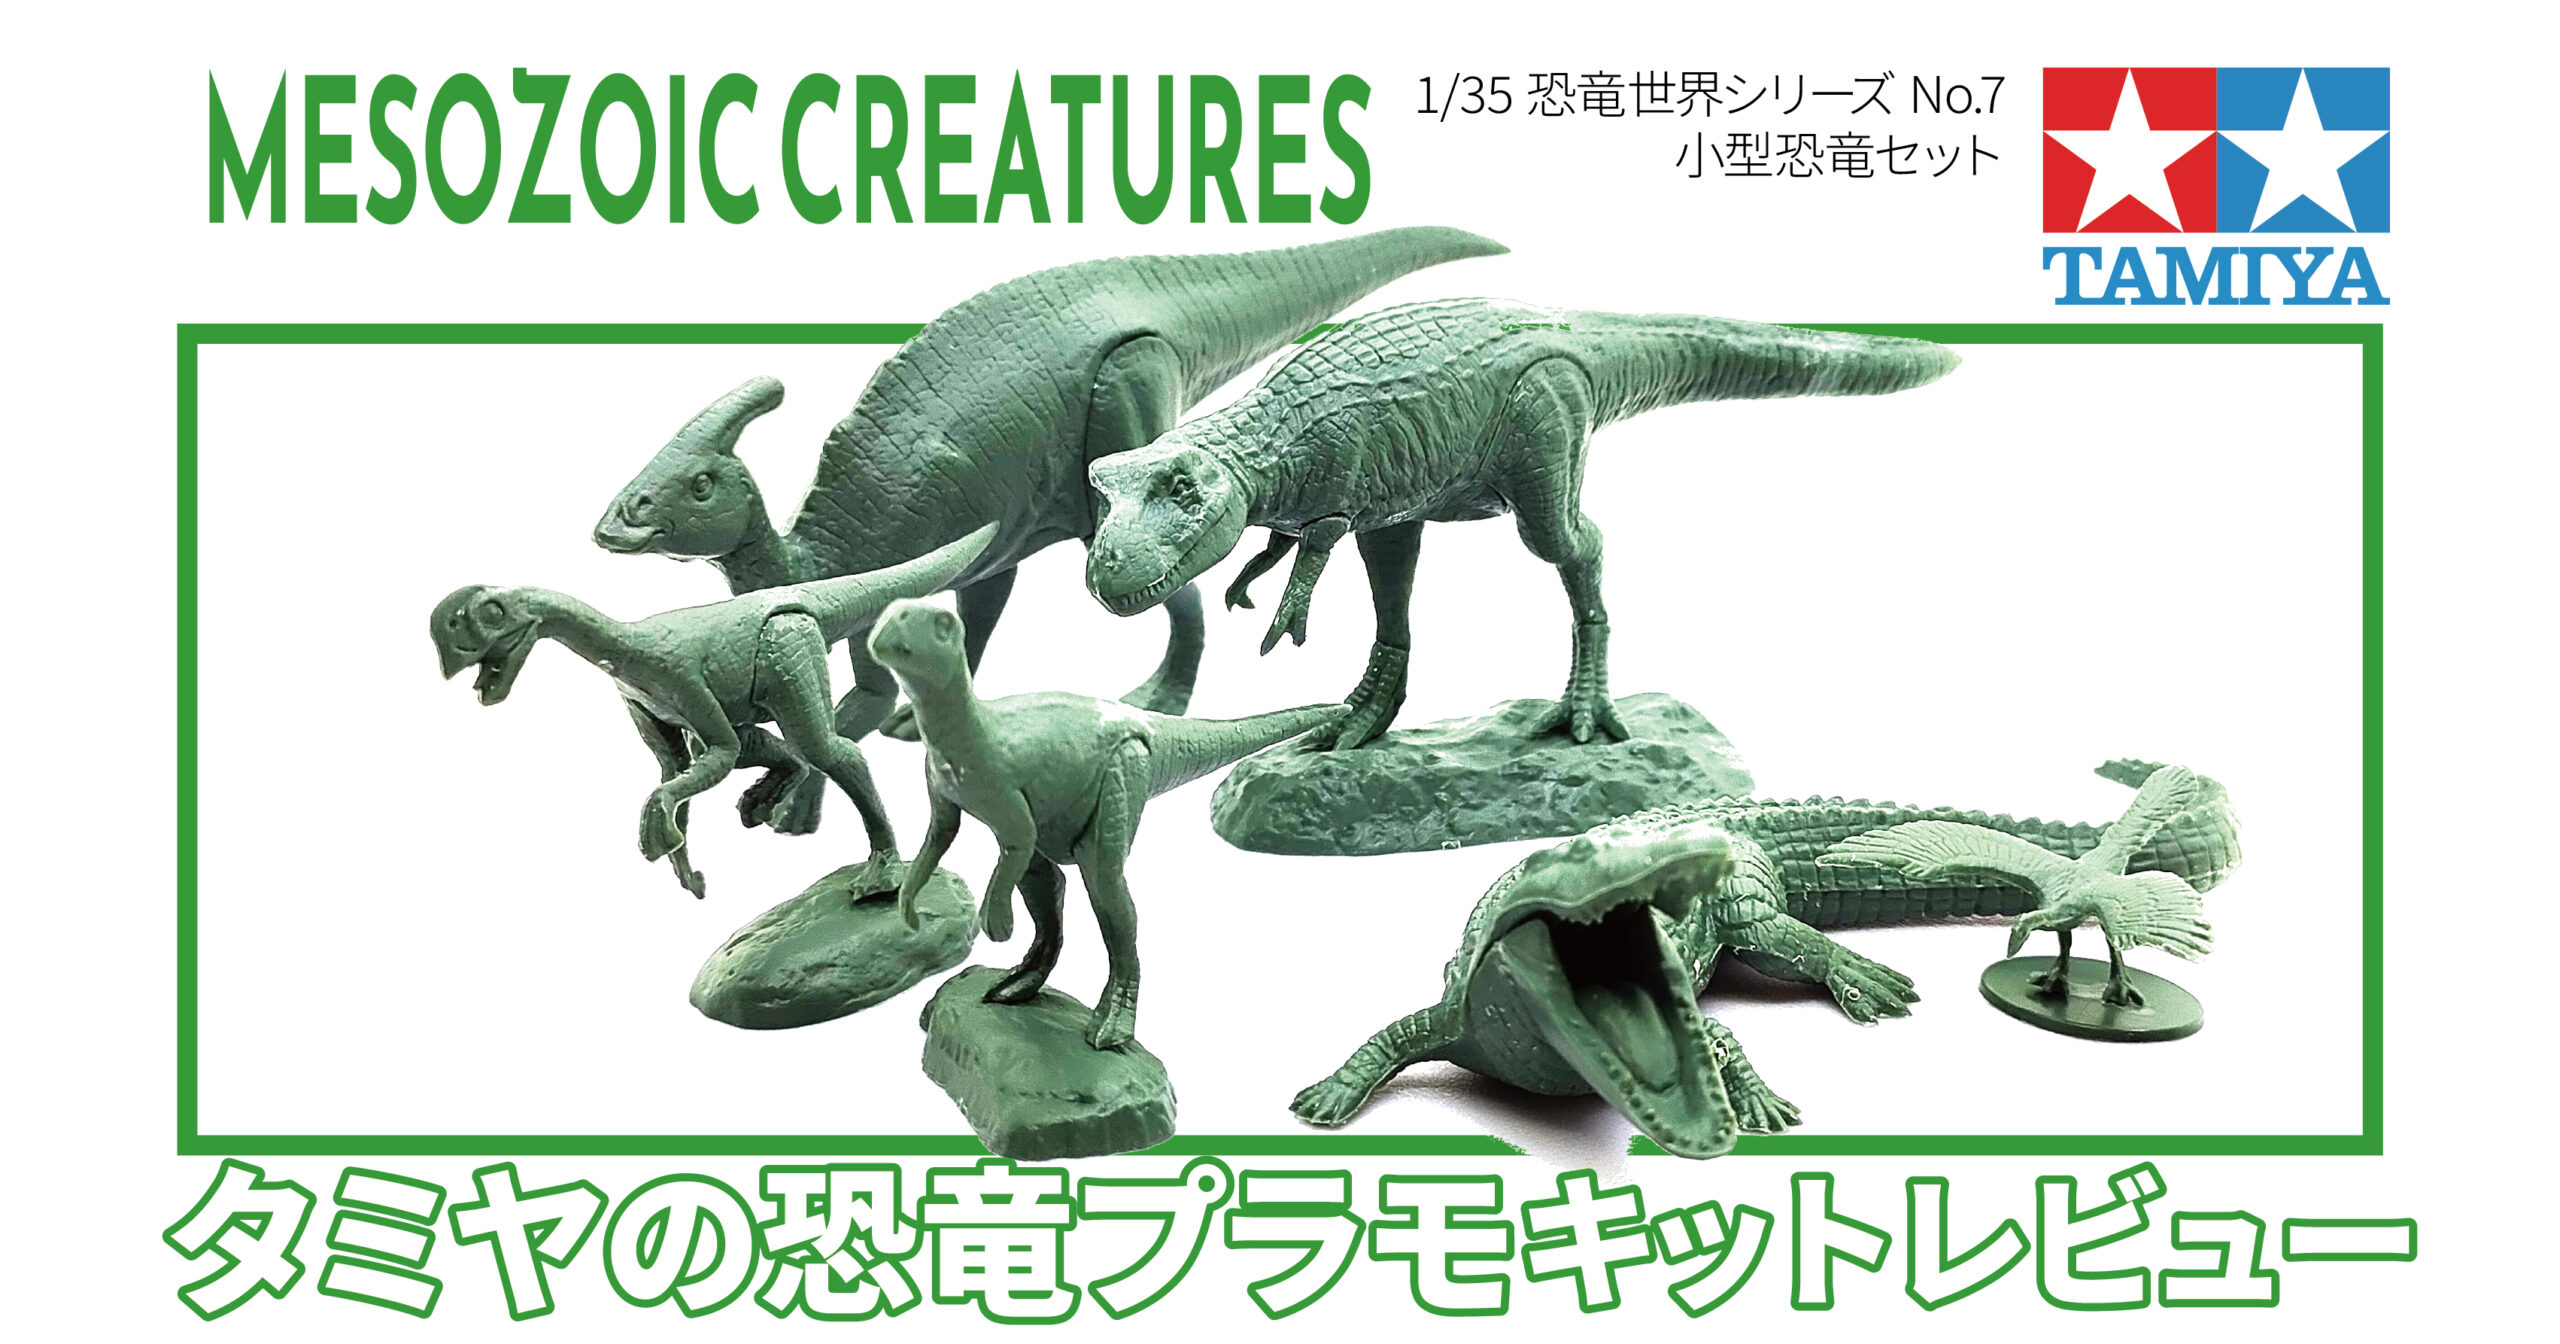 タミヤ 恐竜プラモ 恐竜世界シリーズ No.7 1/35 小型恐竜セット レビュー | no model blog